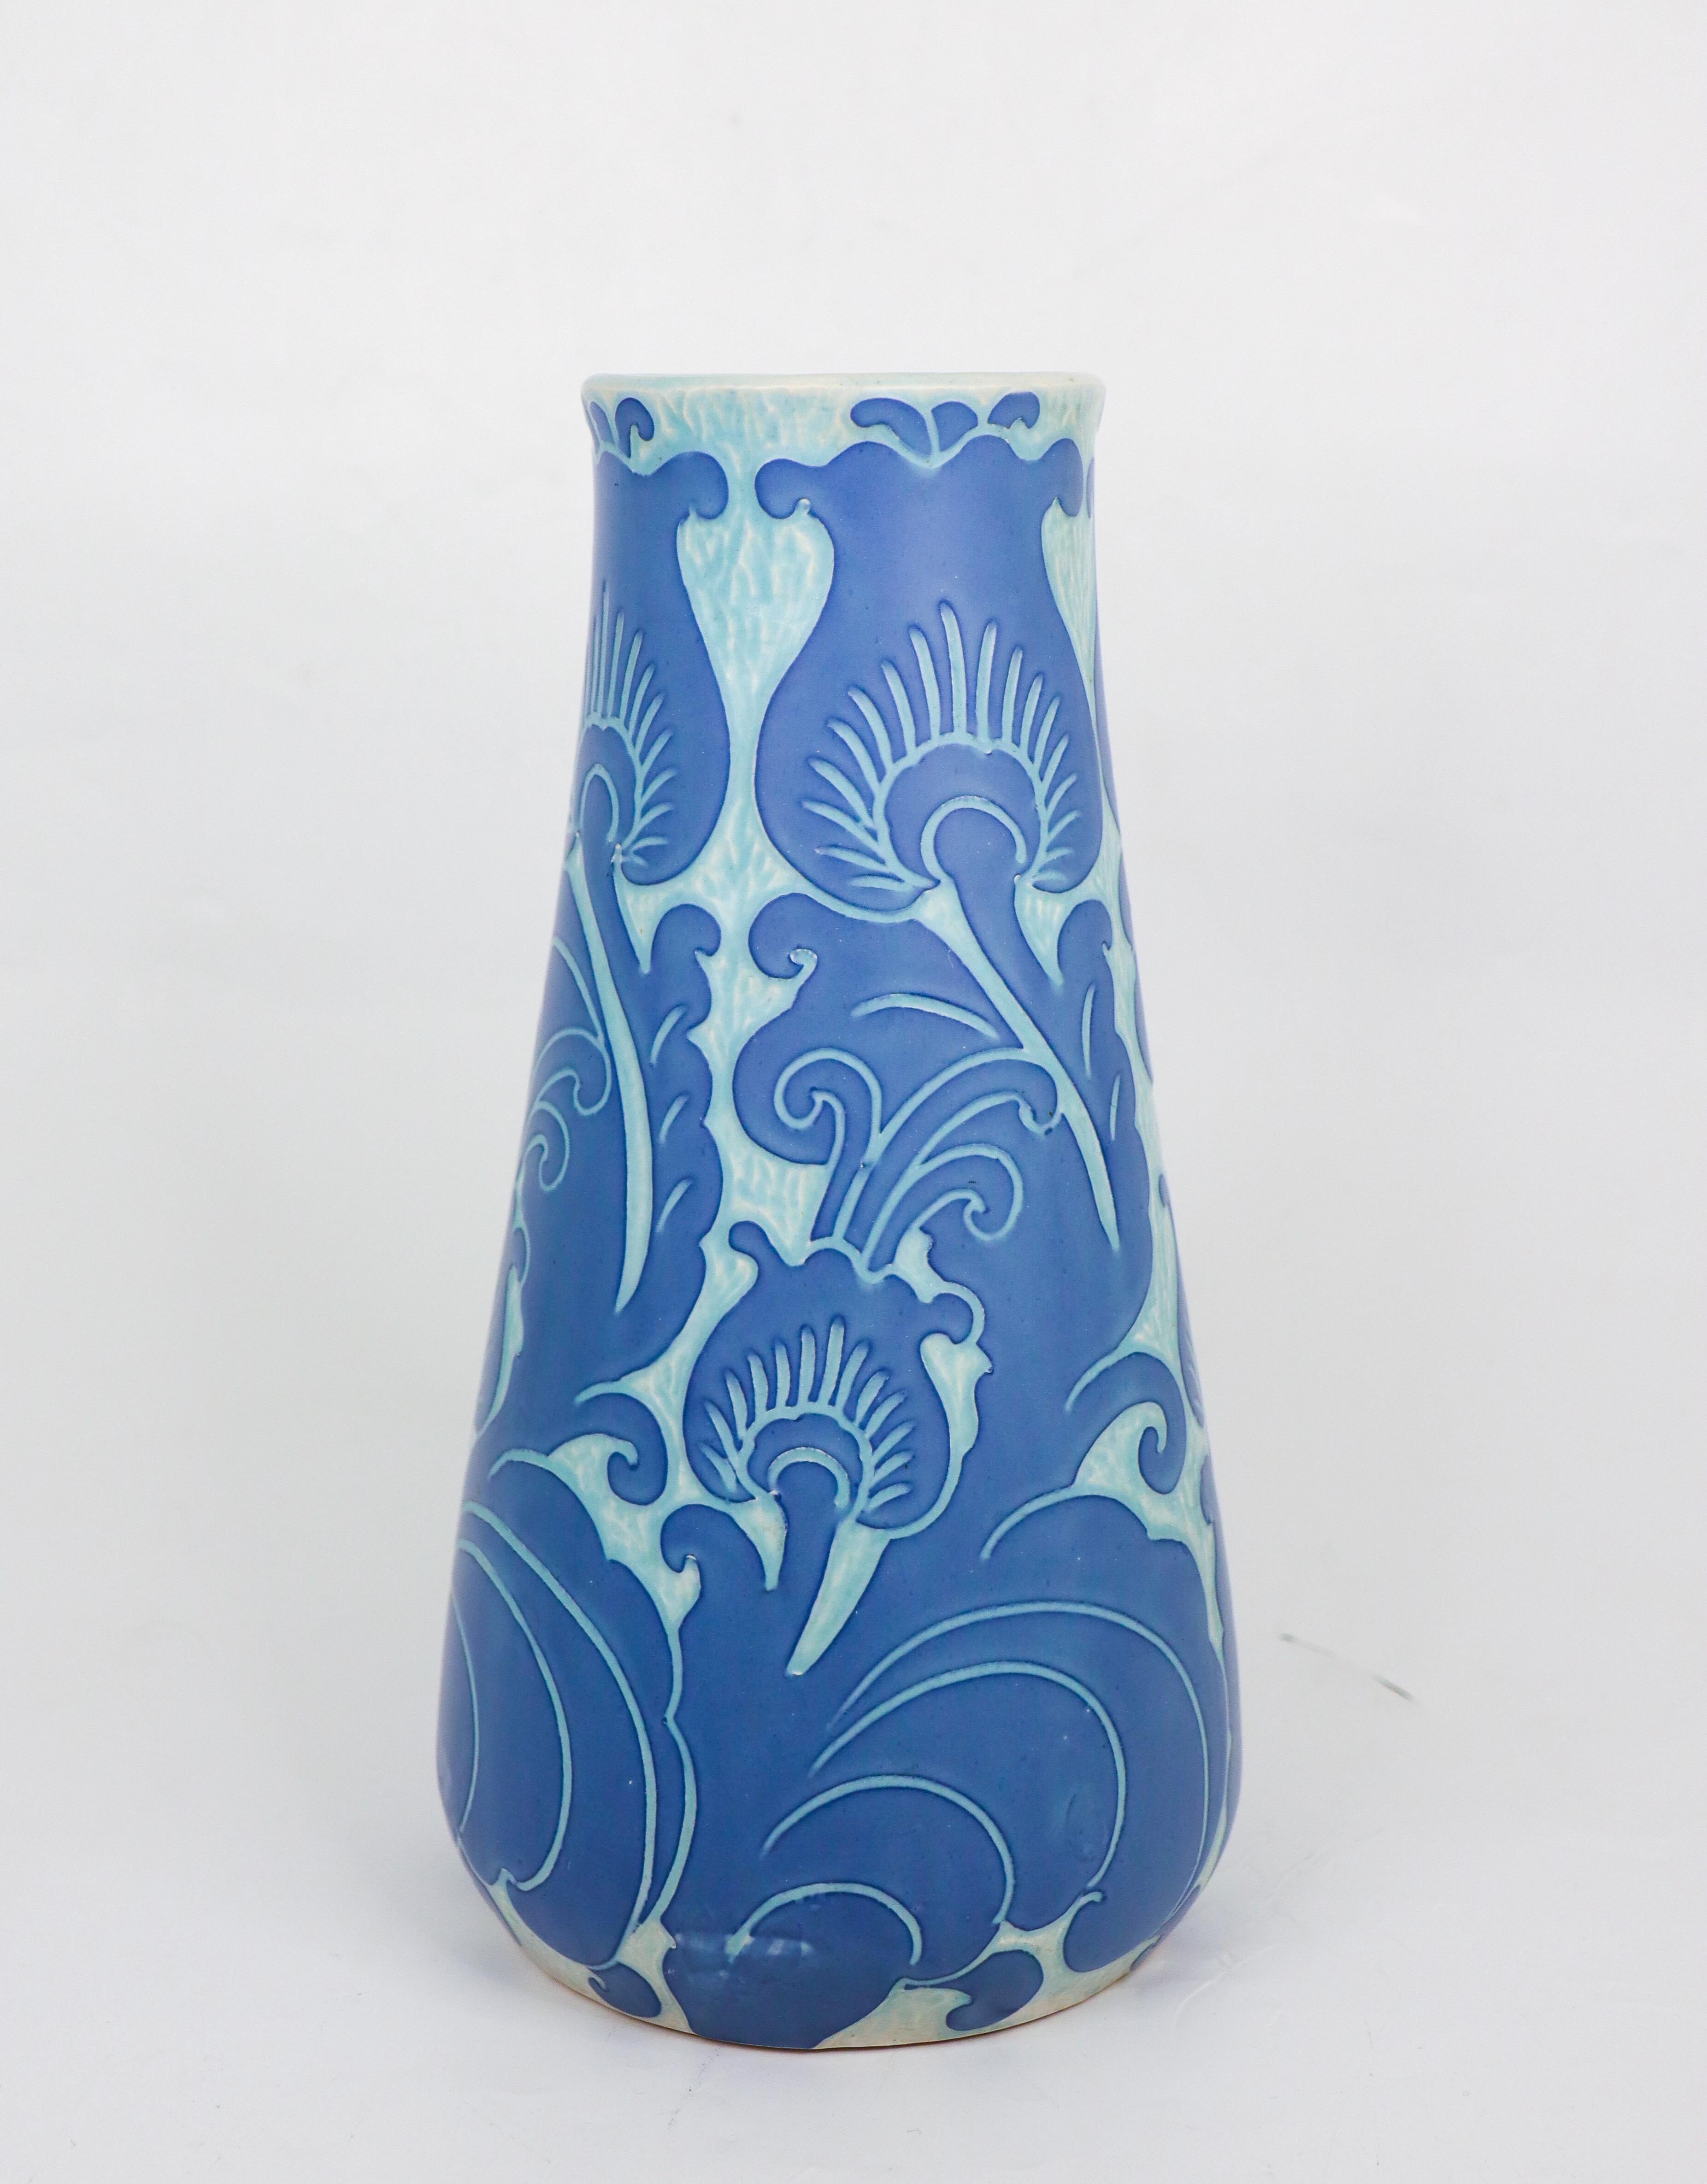 Diese Jugendstilvase aus Keramik wurde 1919 von Josef Ekberg bei Gustavsberg entworfen und stammt aus der klassischen Sgrafitto-Reihe. Die Vase ist 27,5 cm (11